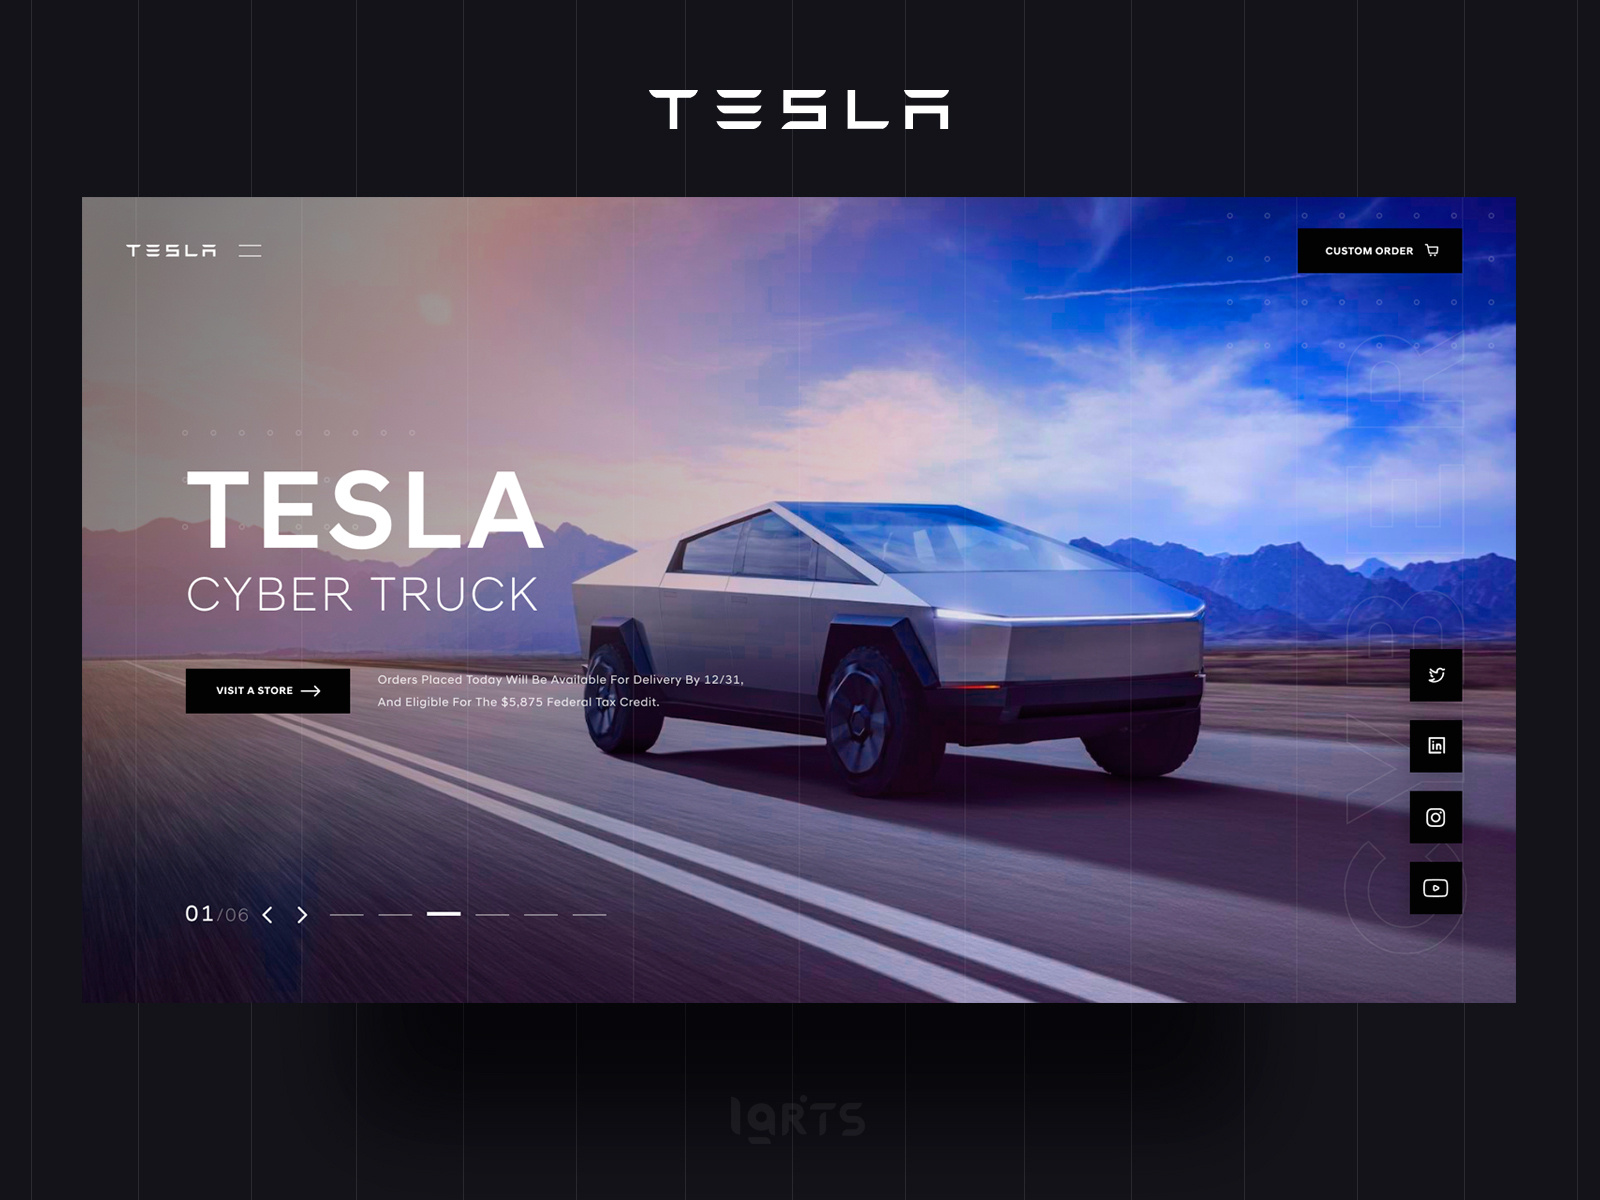 Tesla cyber truck orders